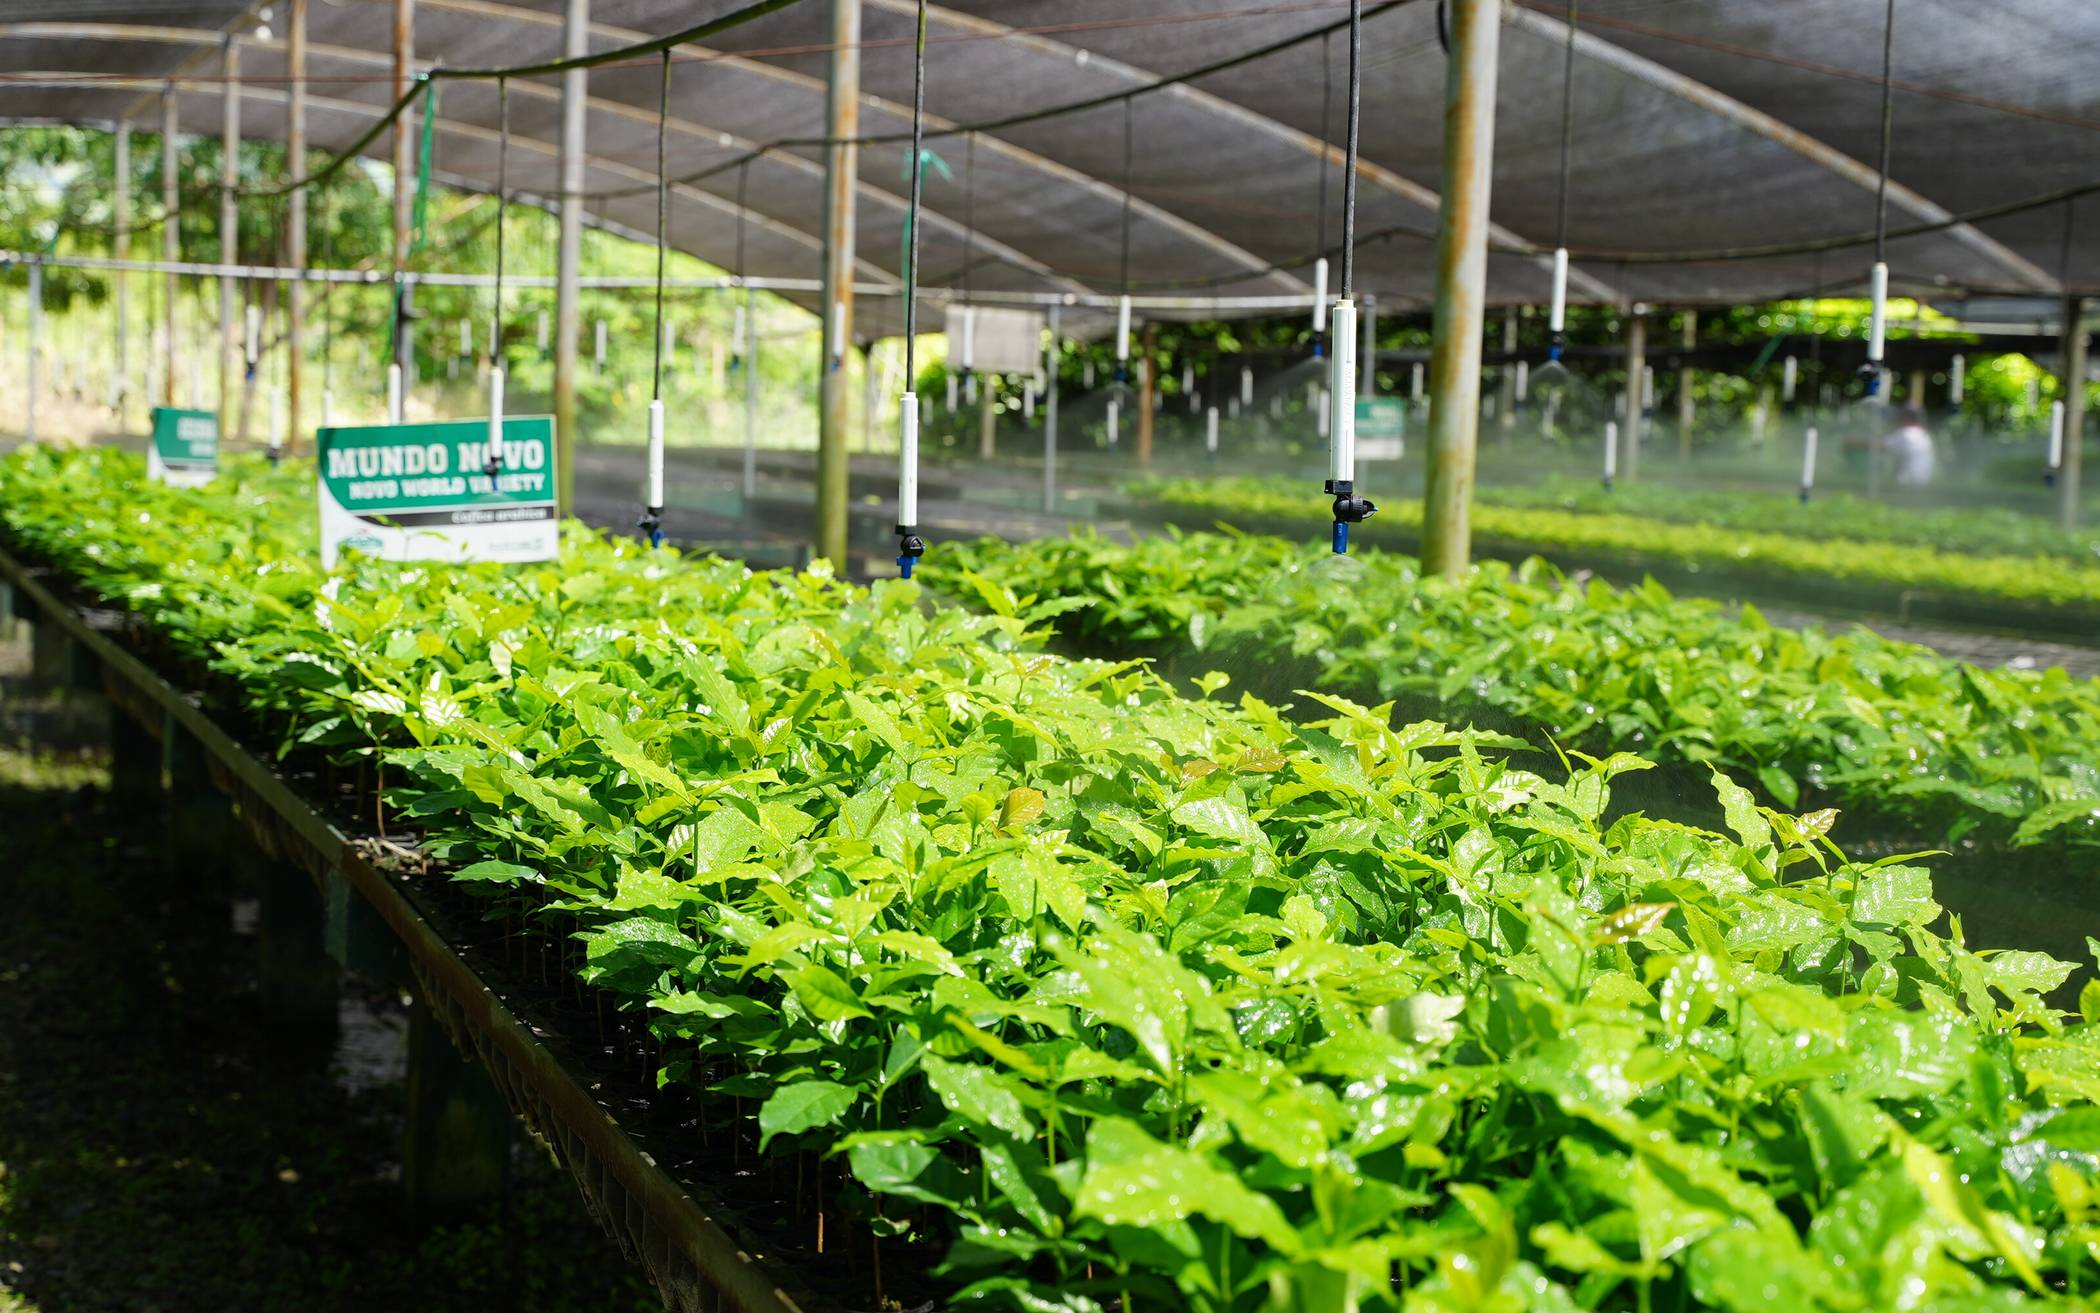  Eine Folge des Klimawandels ist, dass immer mehr Kaffeepflanzen vom sogenannten Kaffeerost befallen sind. Um dem entgegenzuwirken, zieht GEPA-Handelspartner Sol y Café in Peru junge und robuste Kaffeepflanzen heran. Die Baumschule wurde unter anderem durch die Gelder aus dem Fairen Handel ermöglicht. 